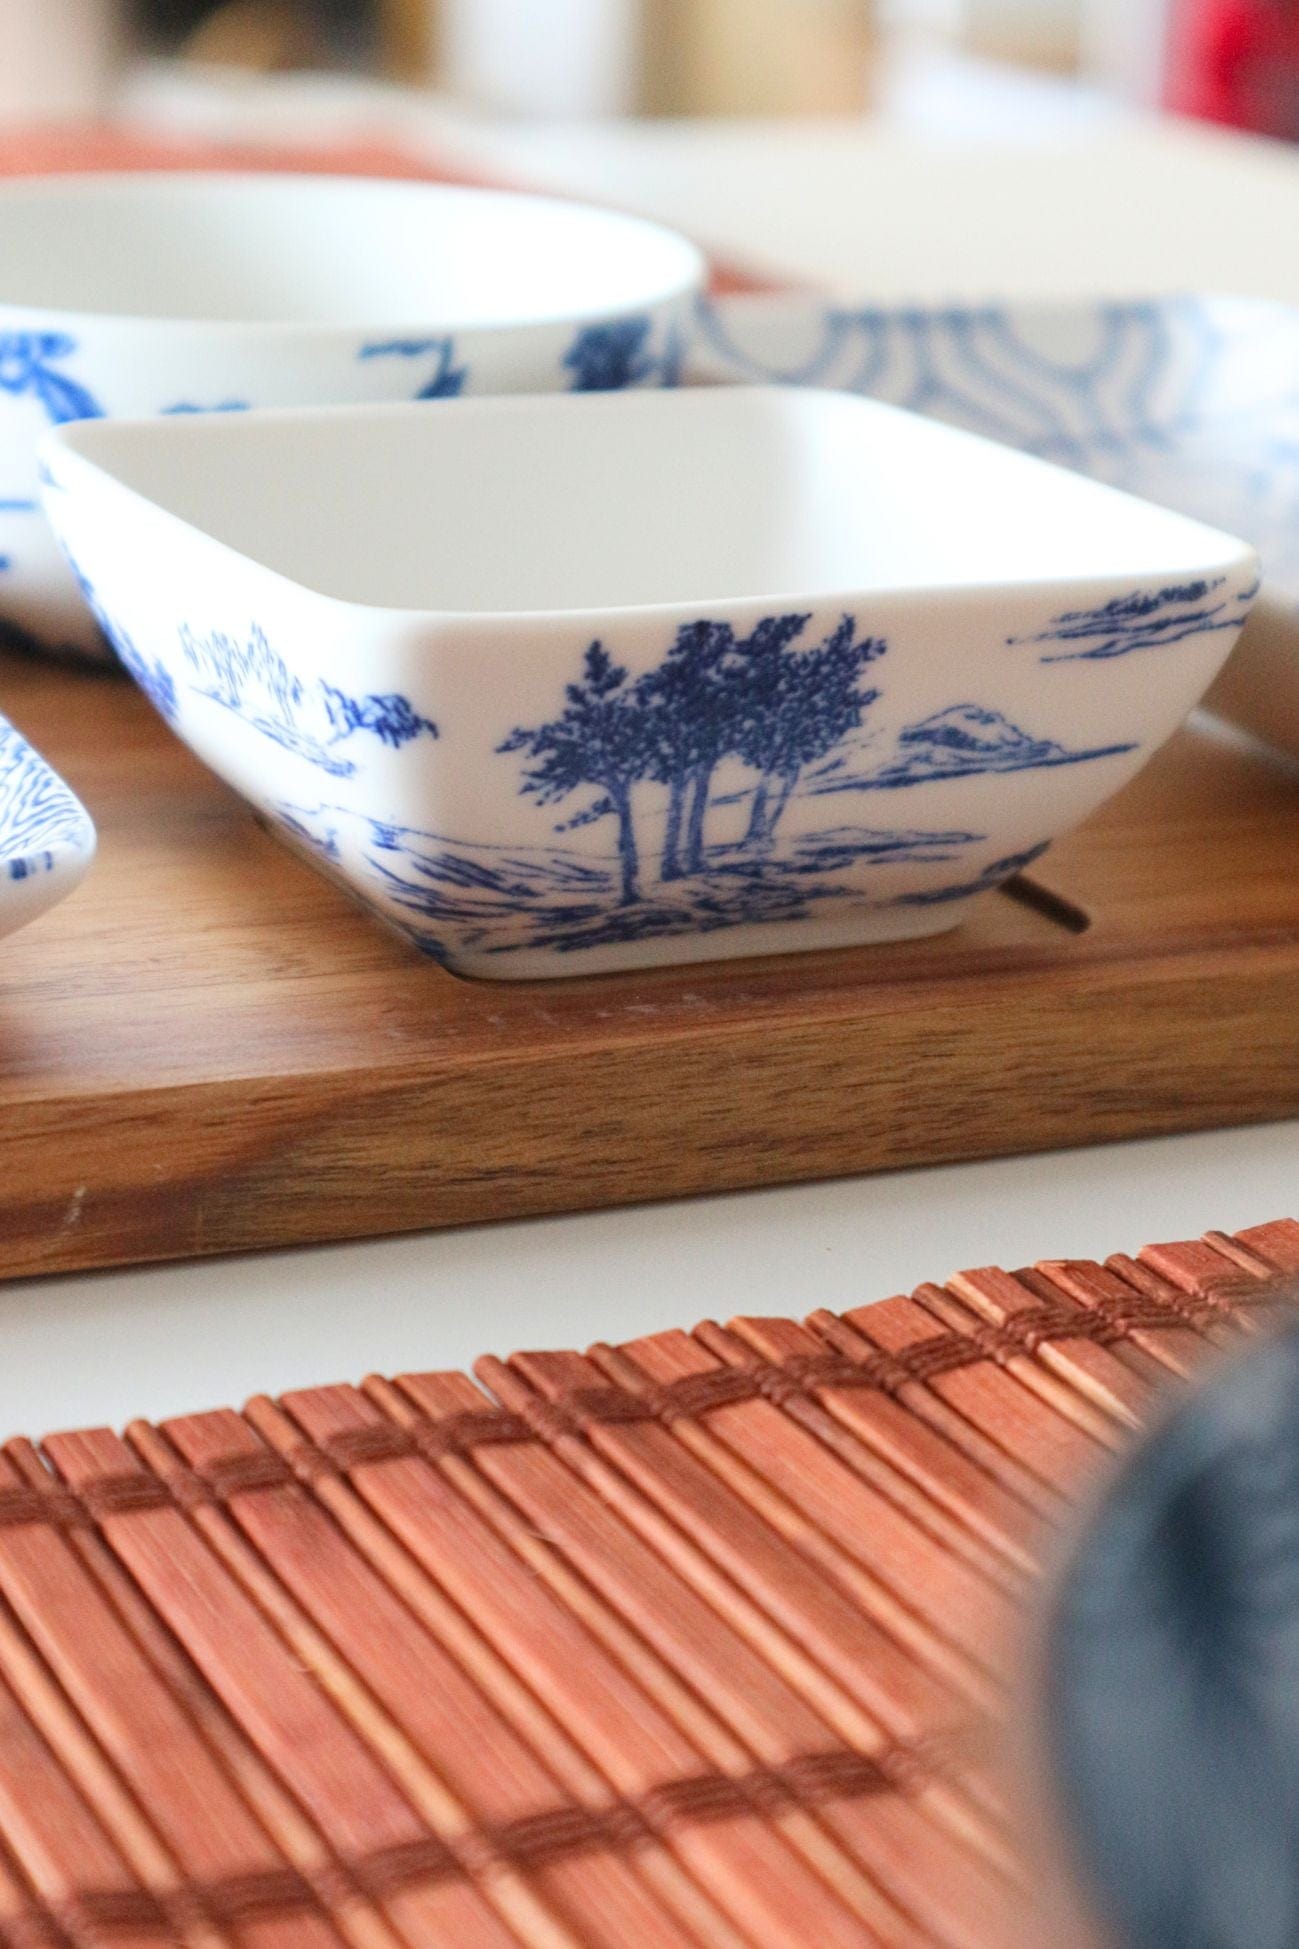 Item International Shizu Shizu - Set da aperitivo in porcellana e acacia in stile orientale | Item International